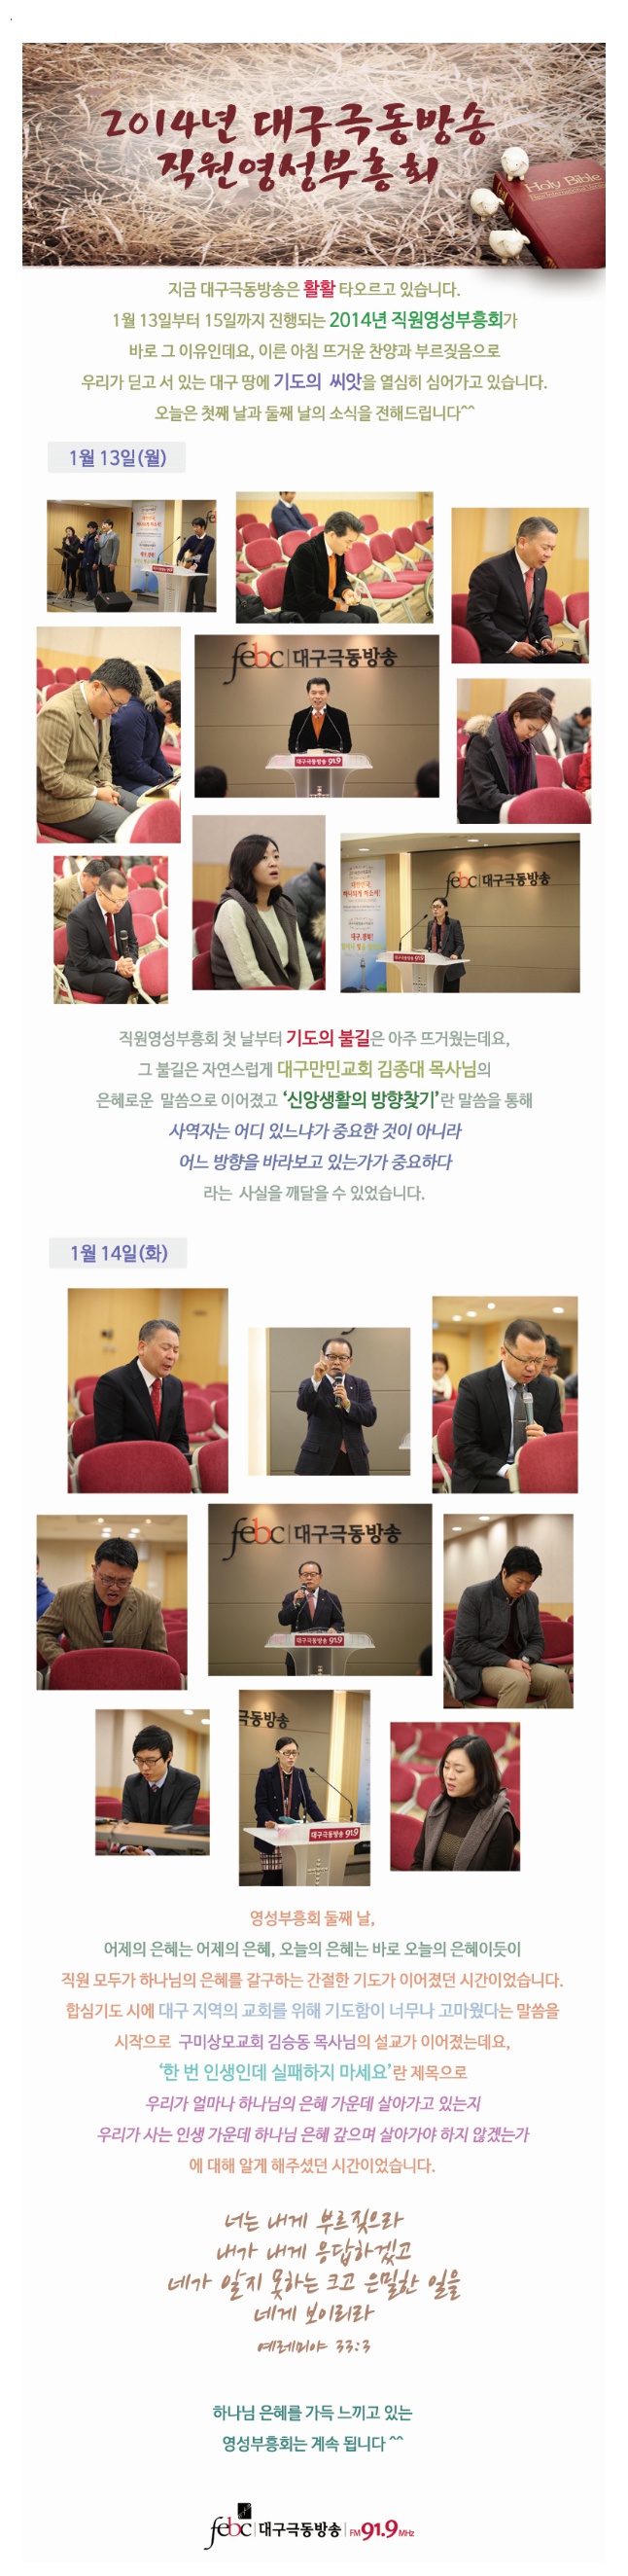 51. 2014년 대구극동방송 직원영성부흥회 1일차~2일차.jpg